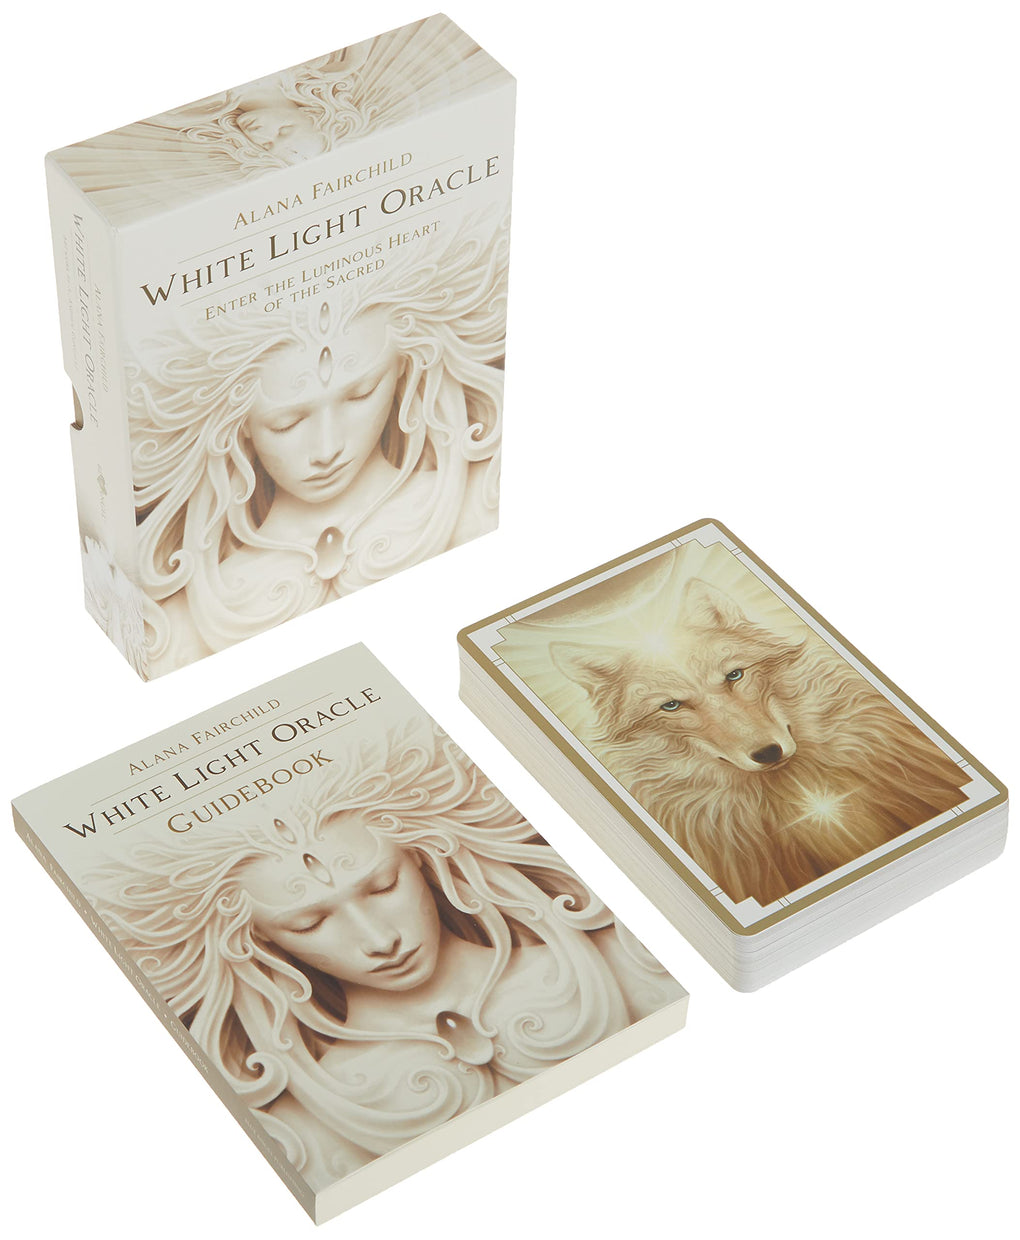 White Light Oracle Cards ~ Alana Fairchild